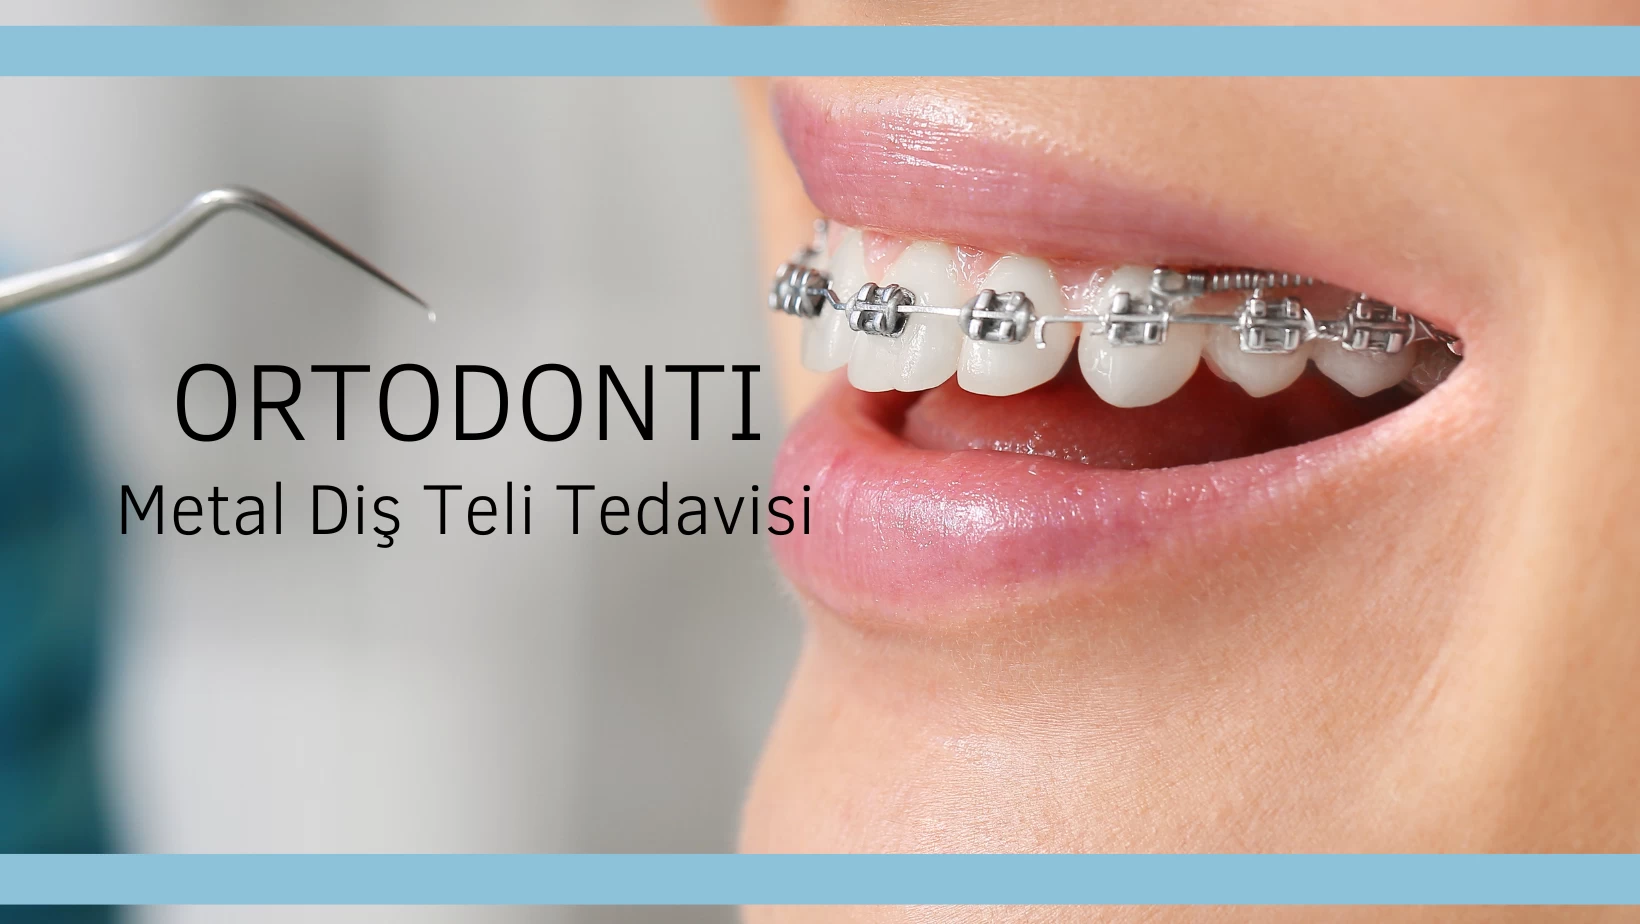 Metal Diş Teli Tedavisi Nasıl Yapılır?